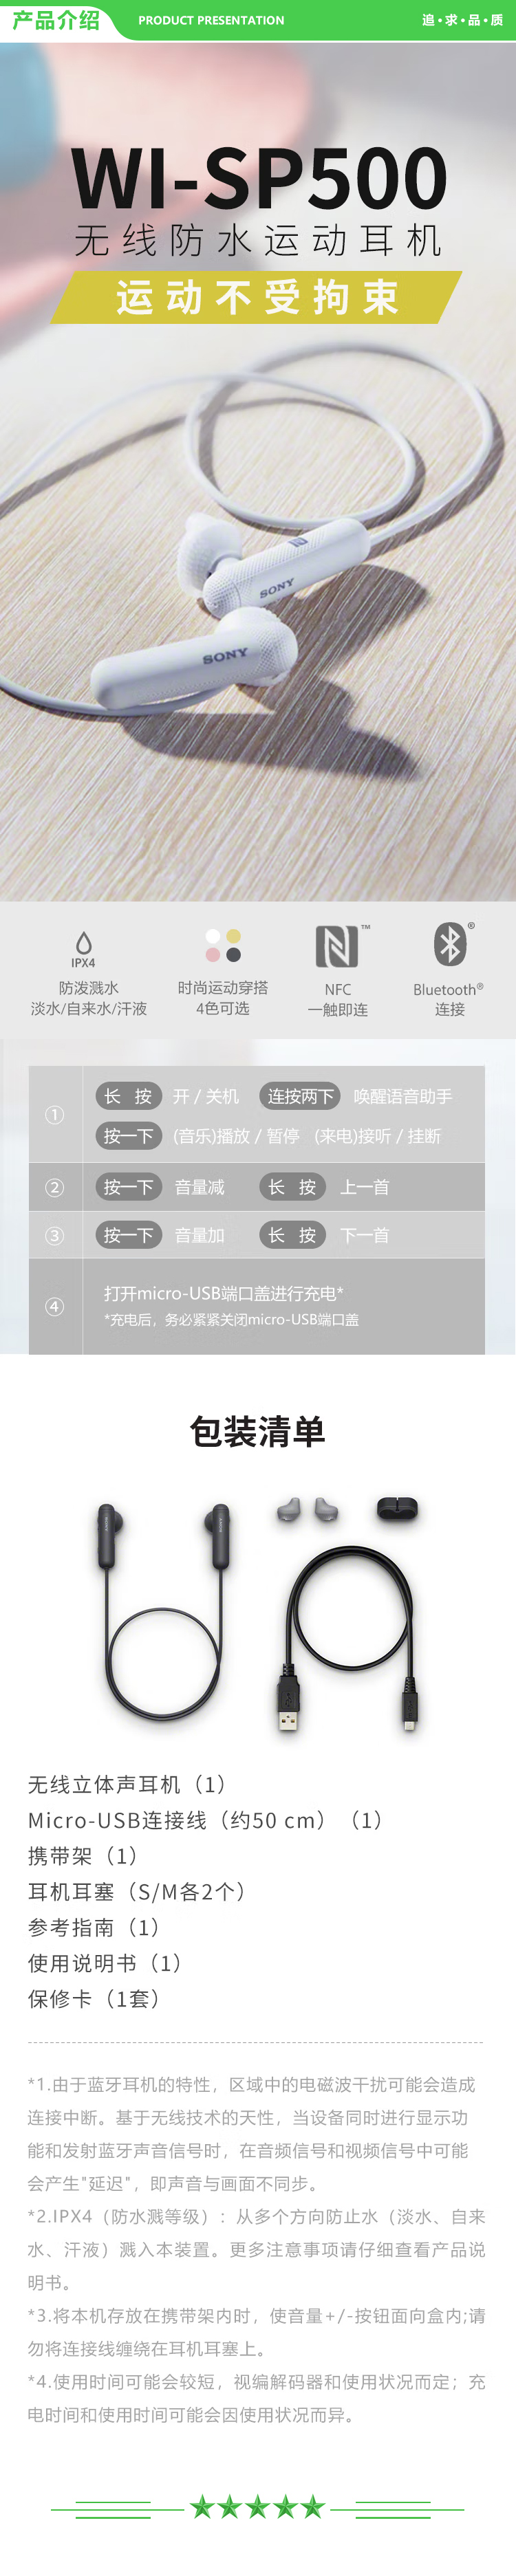 索尼 SONY WI-SP500 无线蓝牙运动耳机 IPX4防泼溅 免提通话 黑色 .jpg